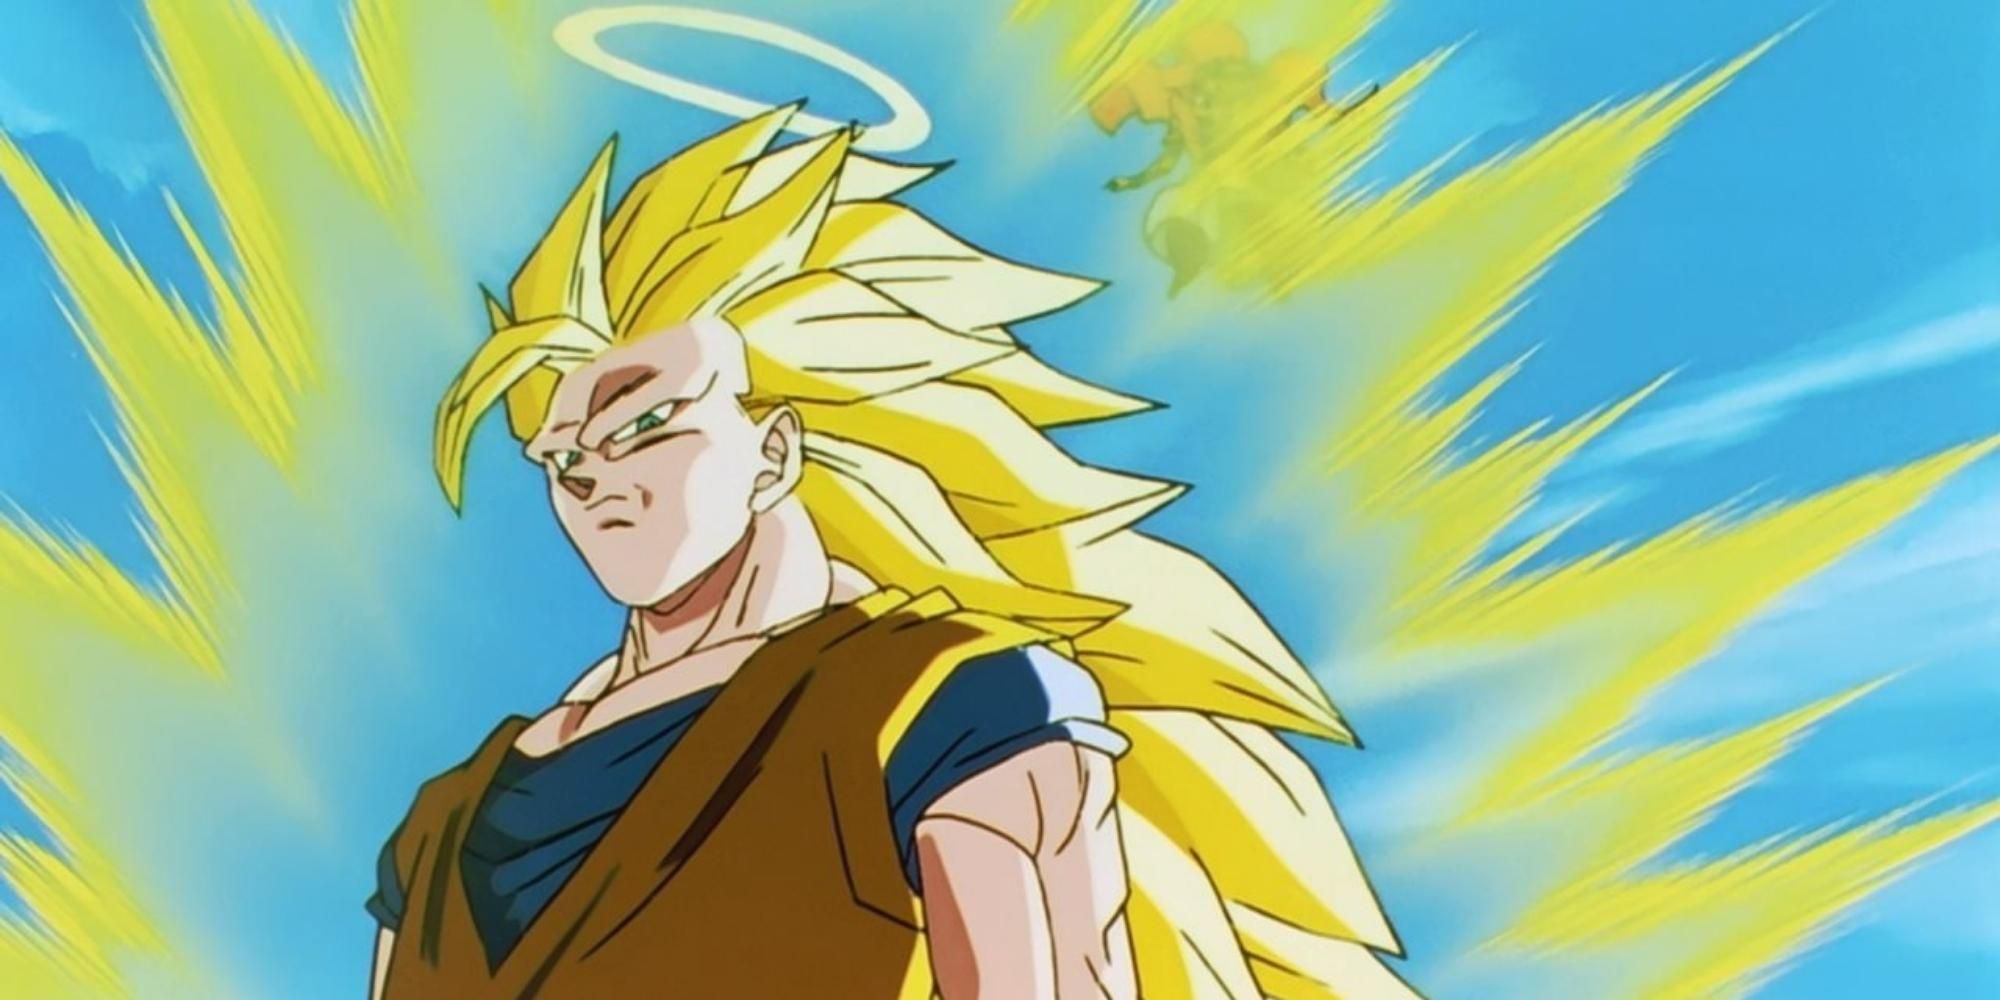 Goku's Super Saiyan 3 form in Dragon Ball Z